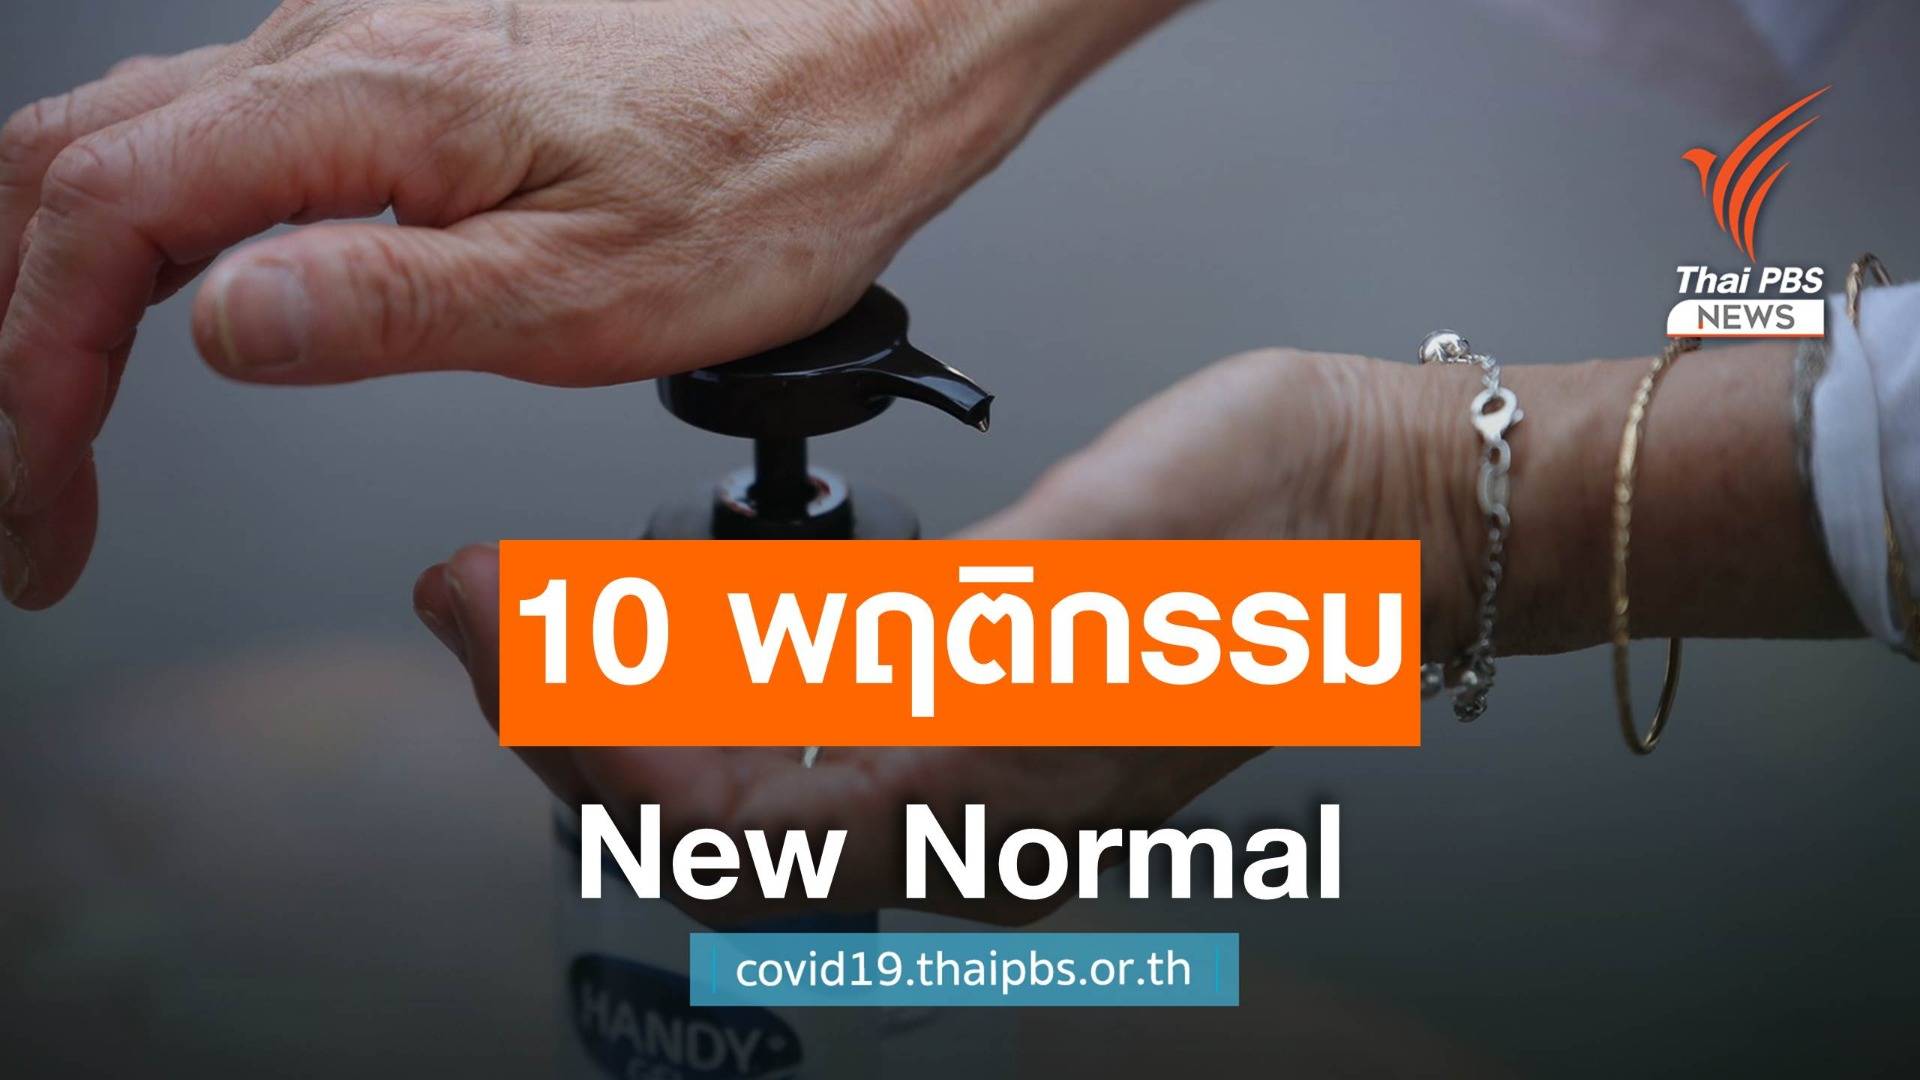 โพลชี้ 10 พฤติกรรม New Normal ของคนไทยจาก COVID-19